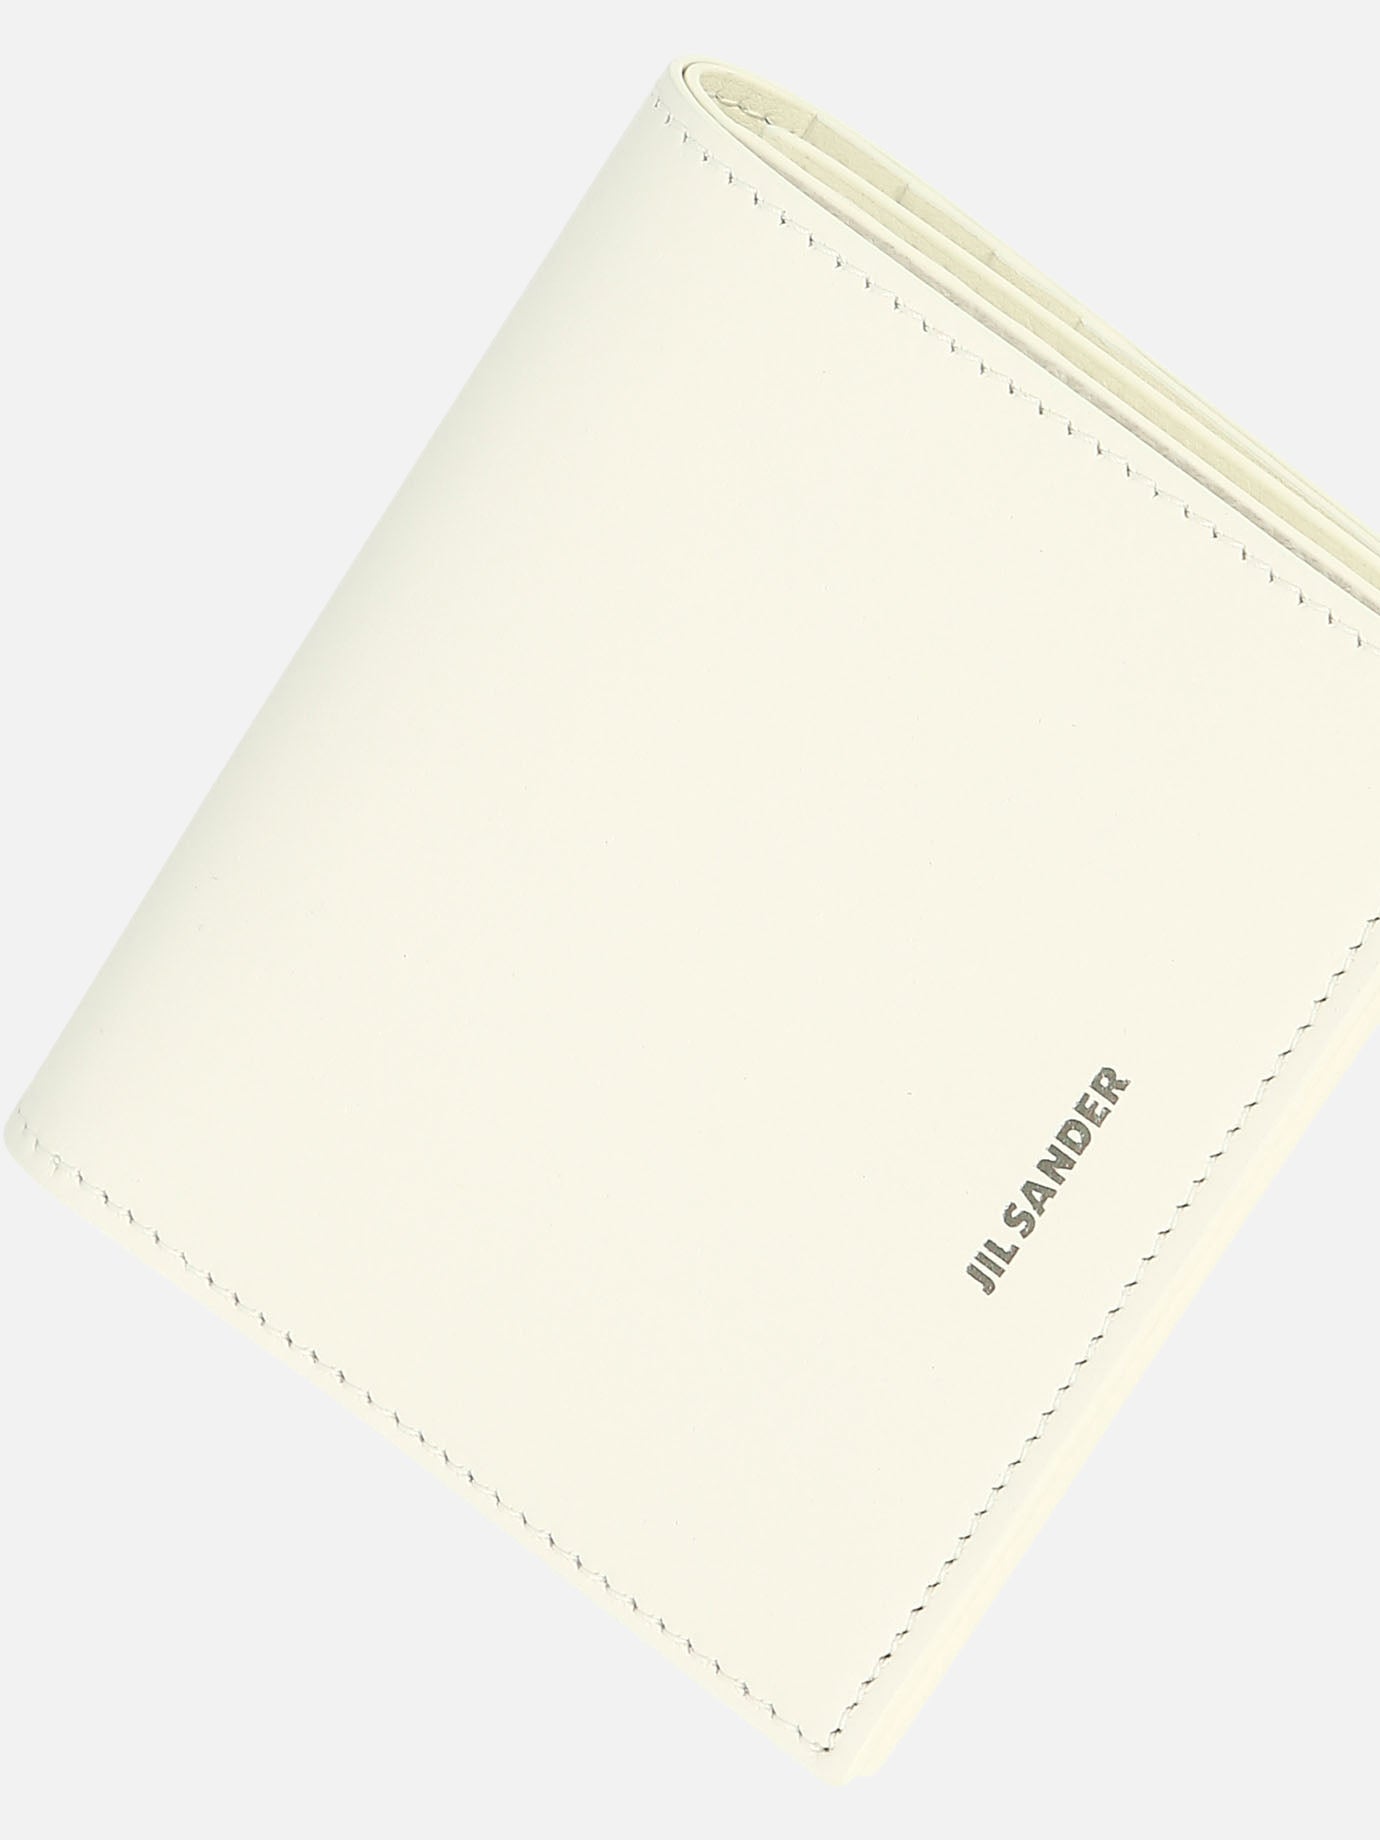 Folded wallet with embossed Jil Sander logo V